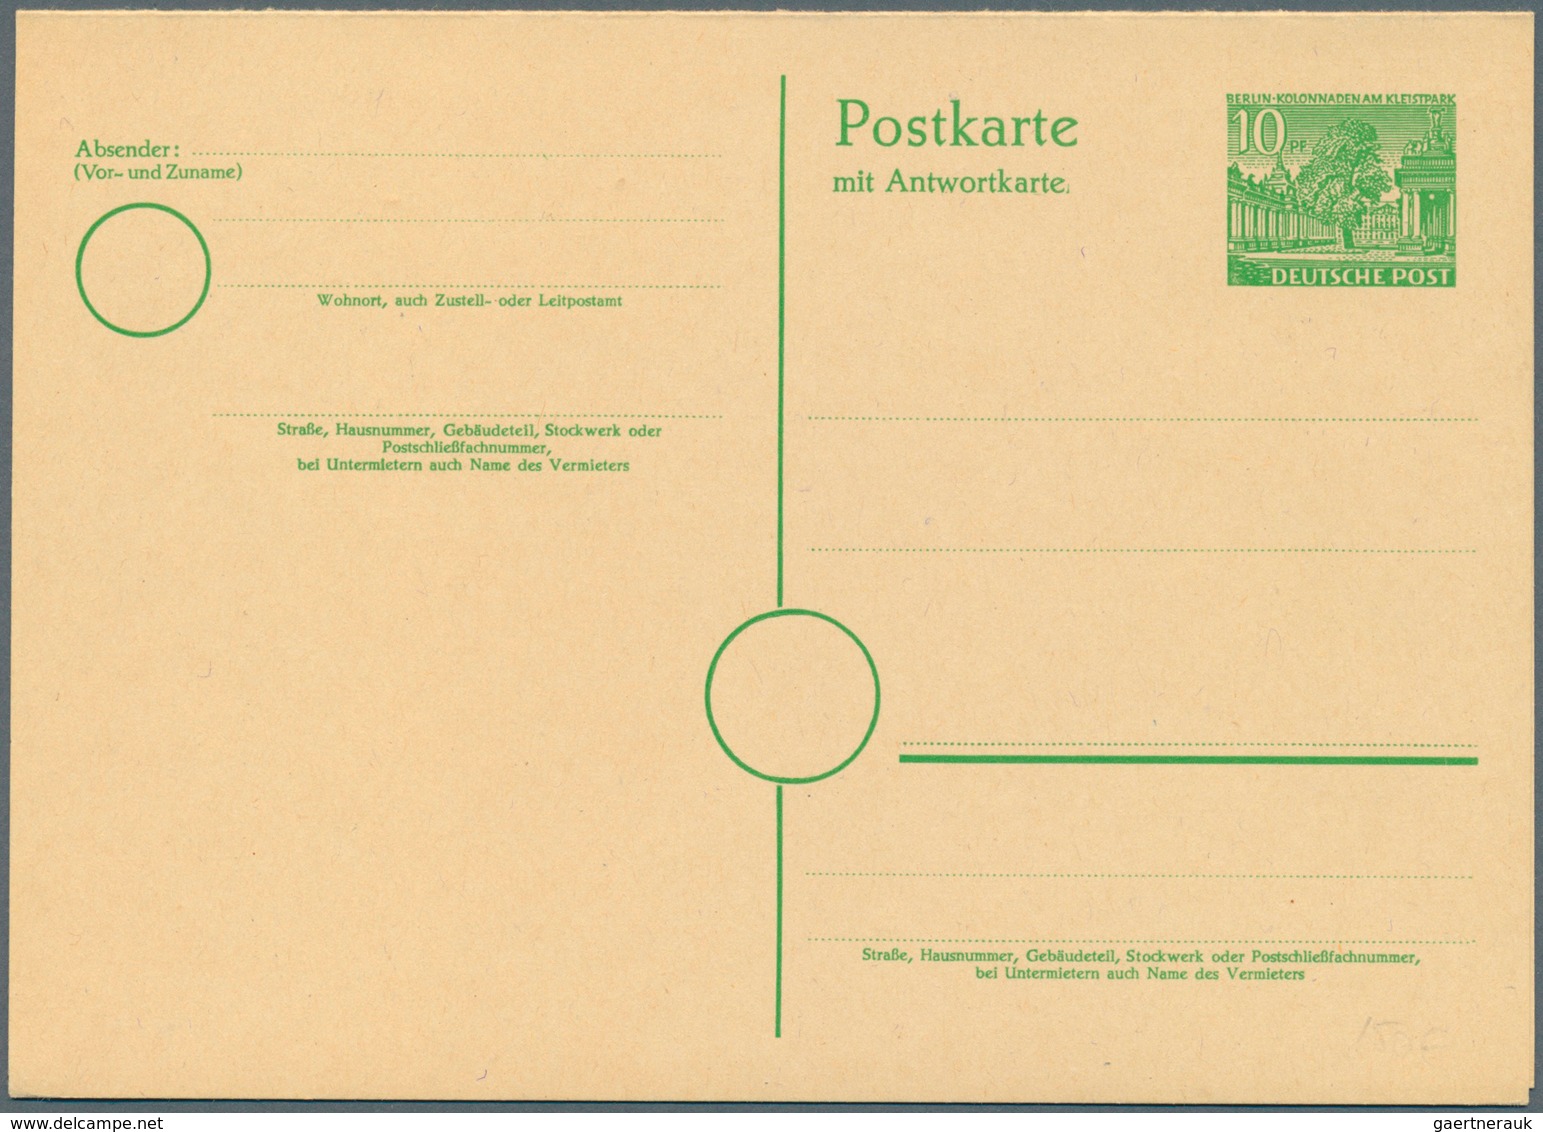 32544 Berlin - Ganzsachen: 1948/1967. Spannende Sammlung von 109 nur versch. POSTKARTEN, oft doppelt gesam